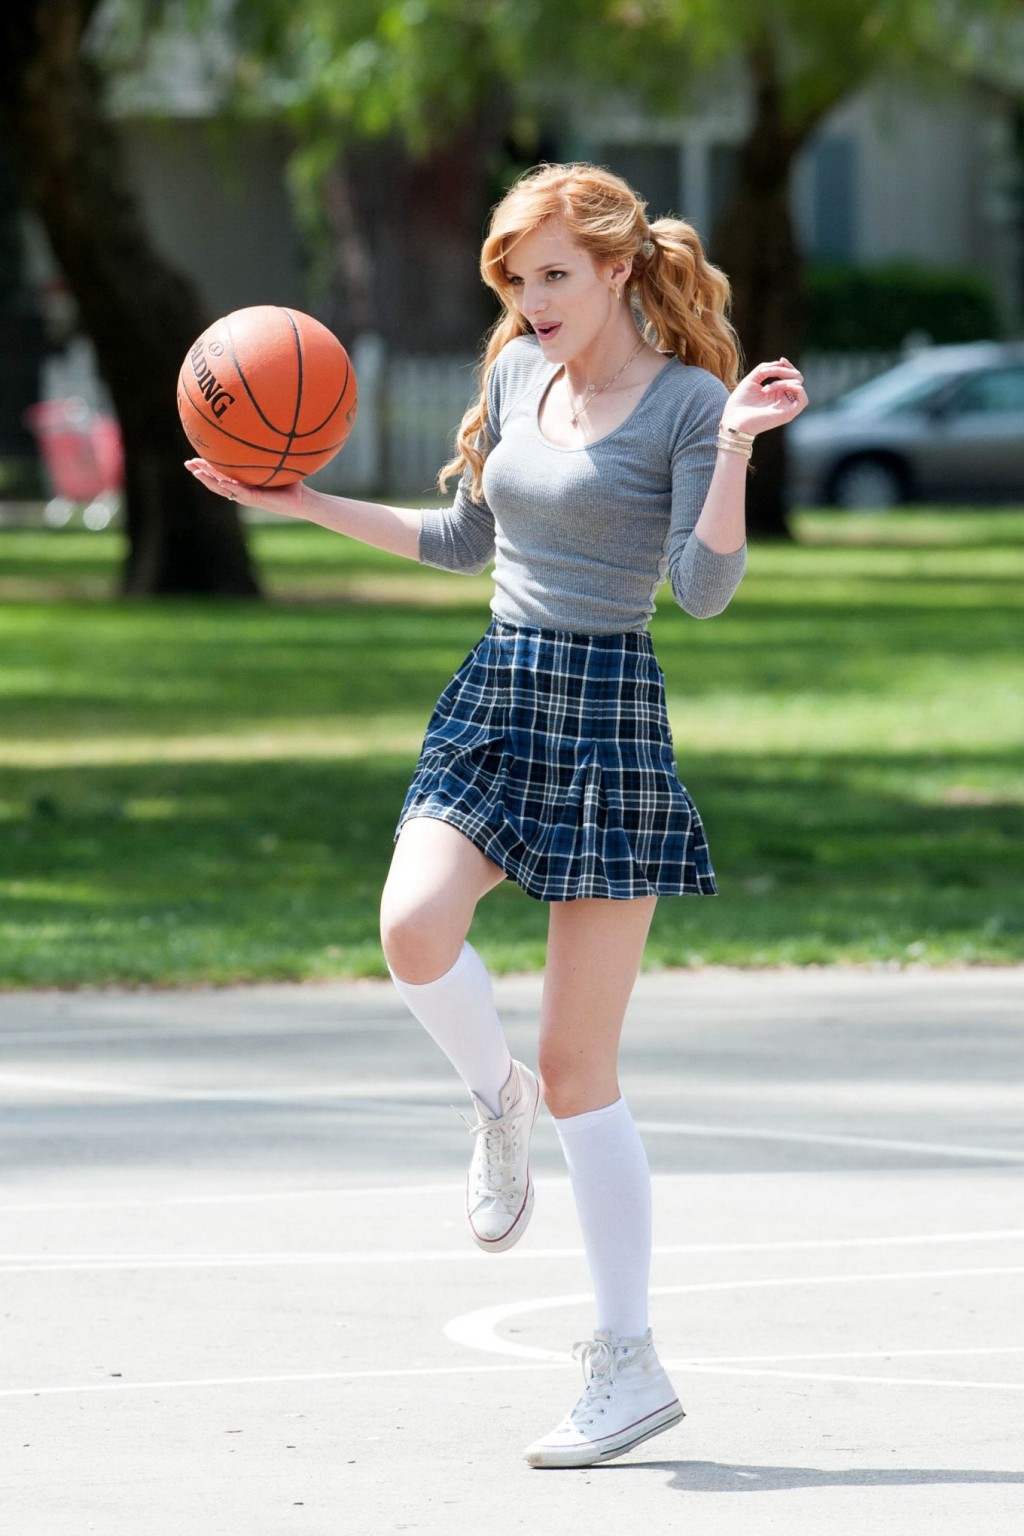 ベラ・ソーン、「Most ghos」の撮影で女子高生姿でバスケをする
 #75200811